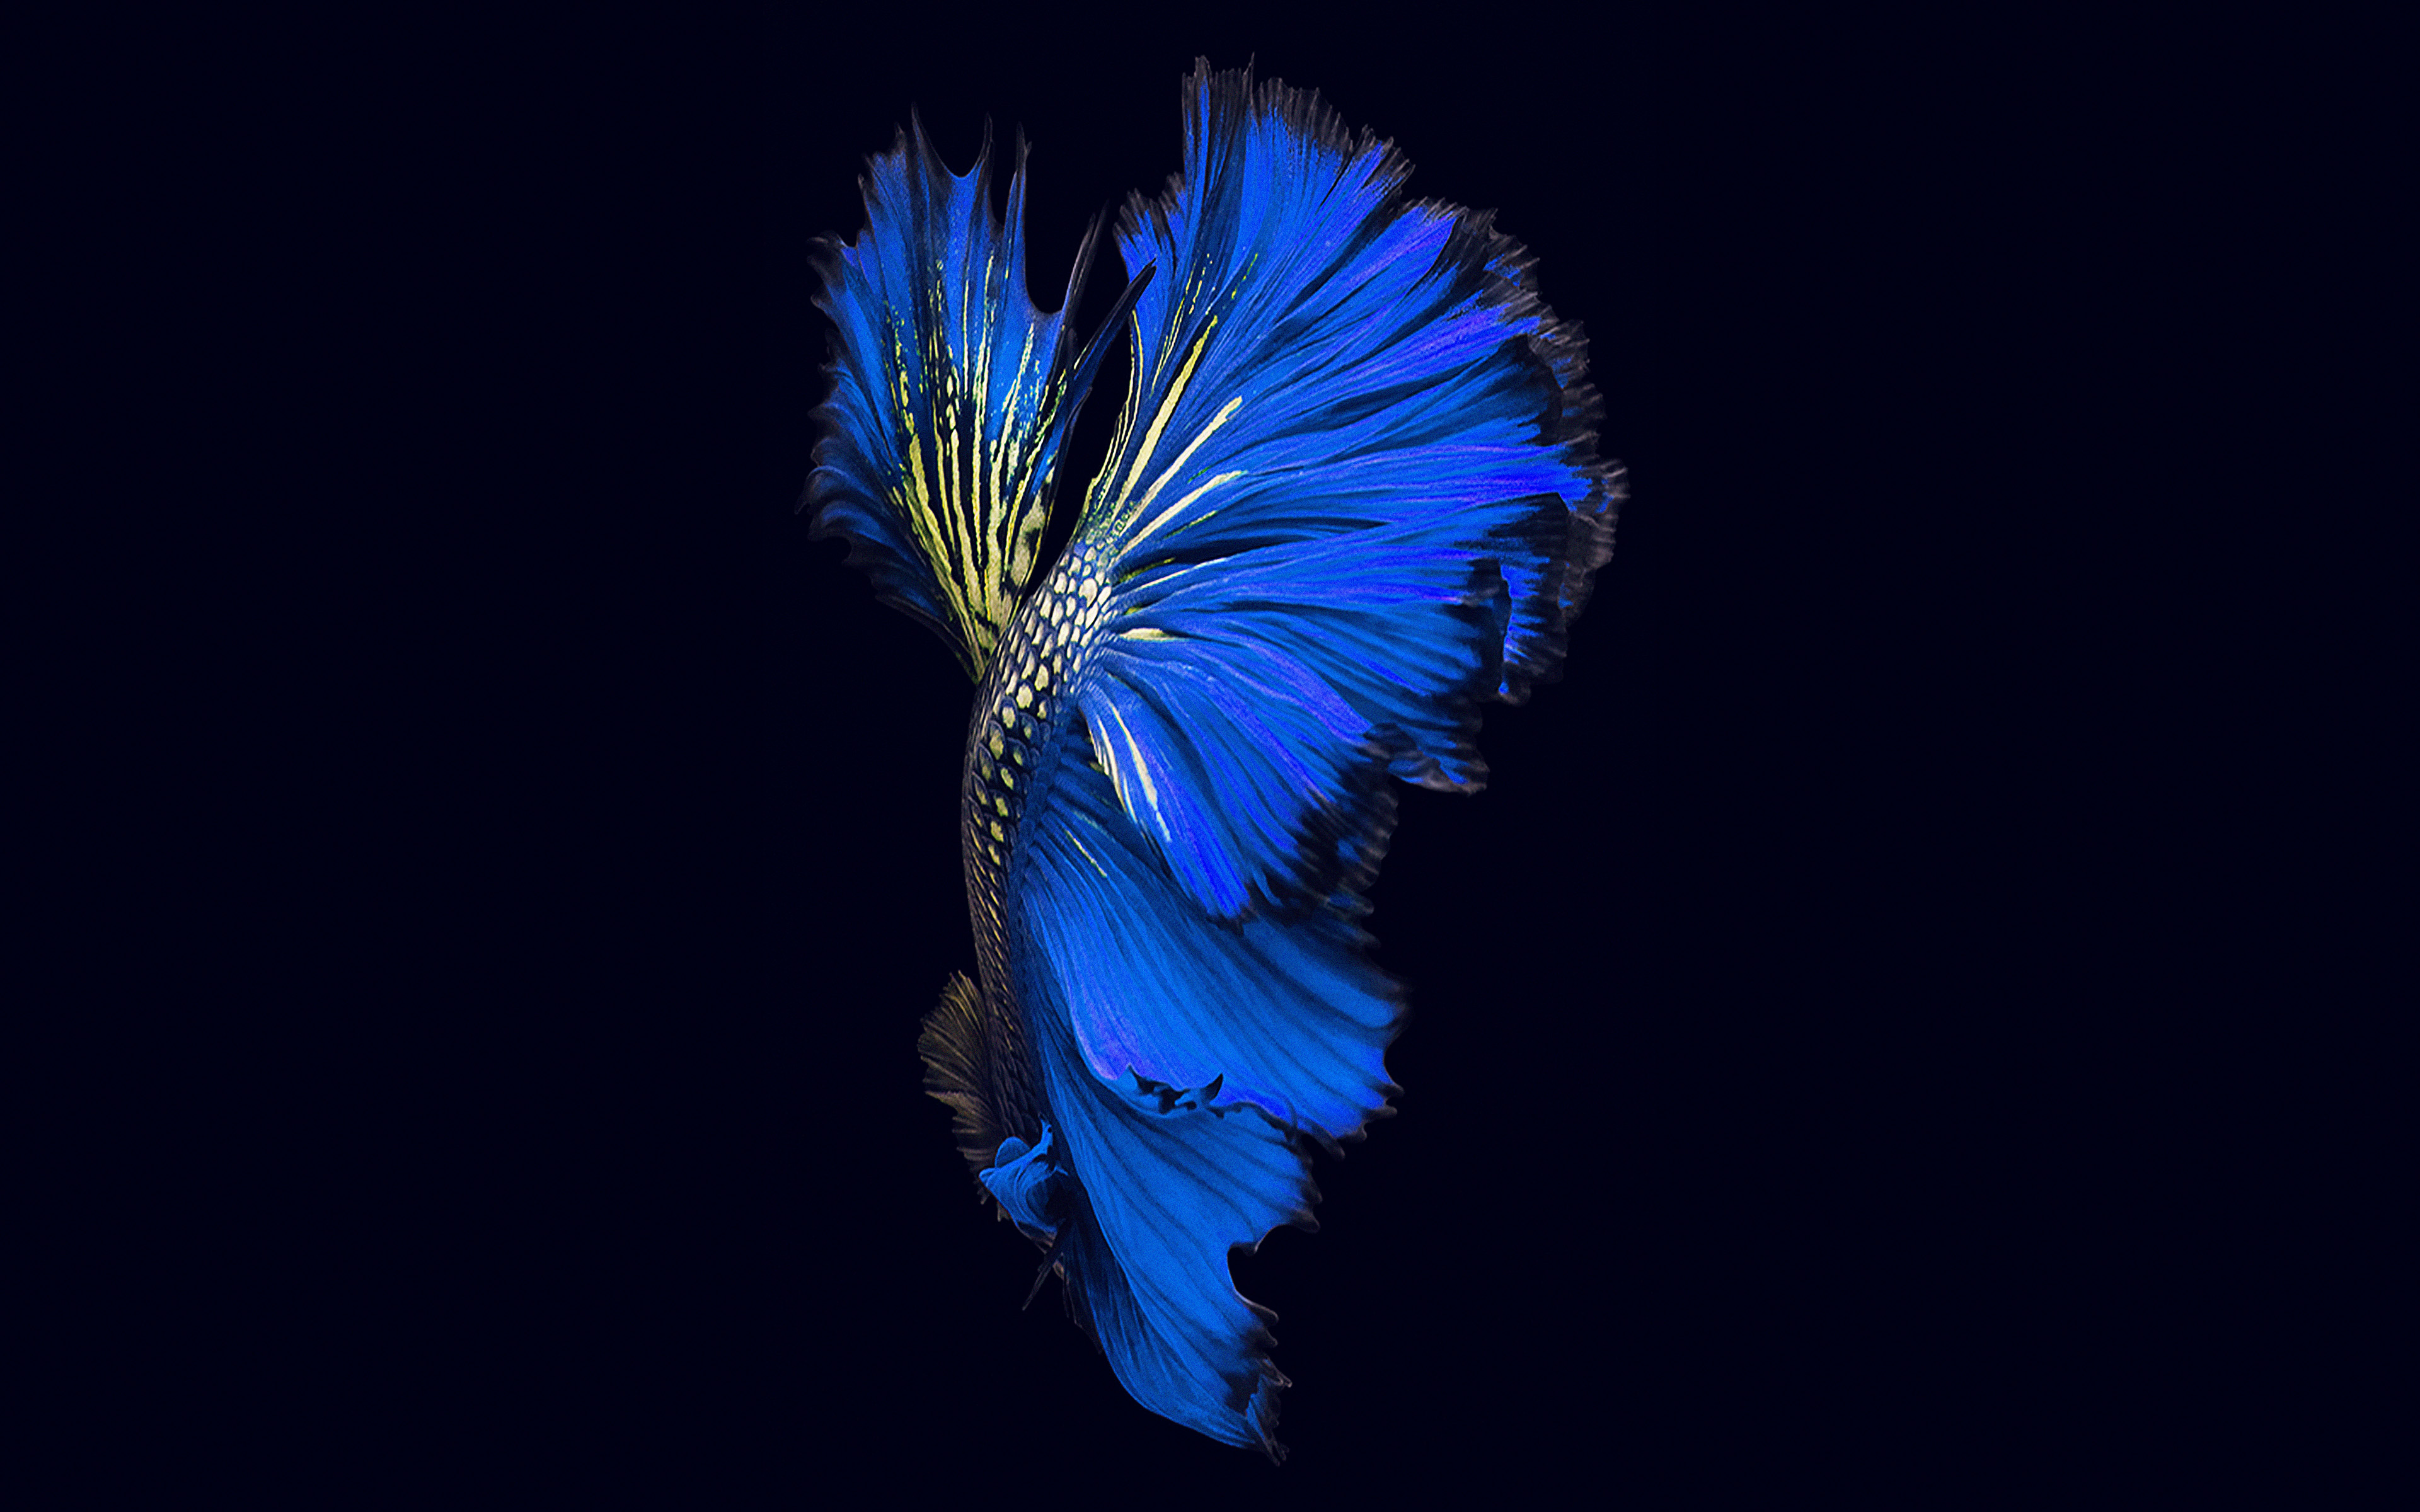 fond d'écran en direct,bleu,plume,bleu cobalt,bleu électrique,macro photographie